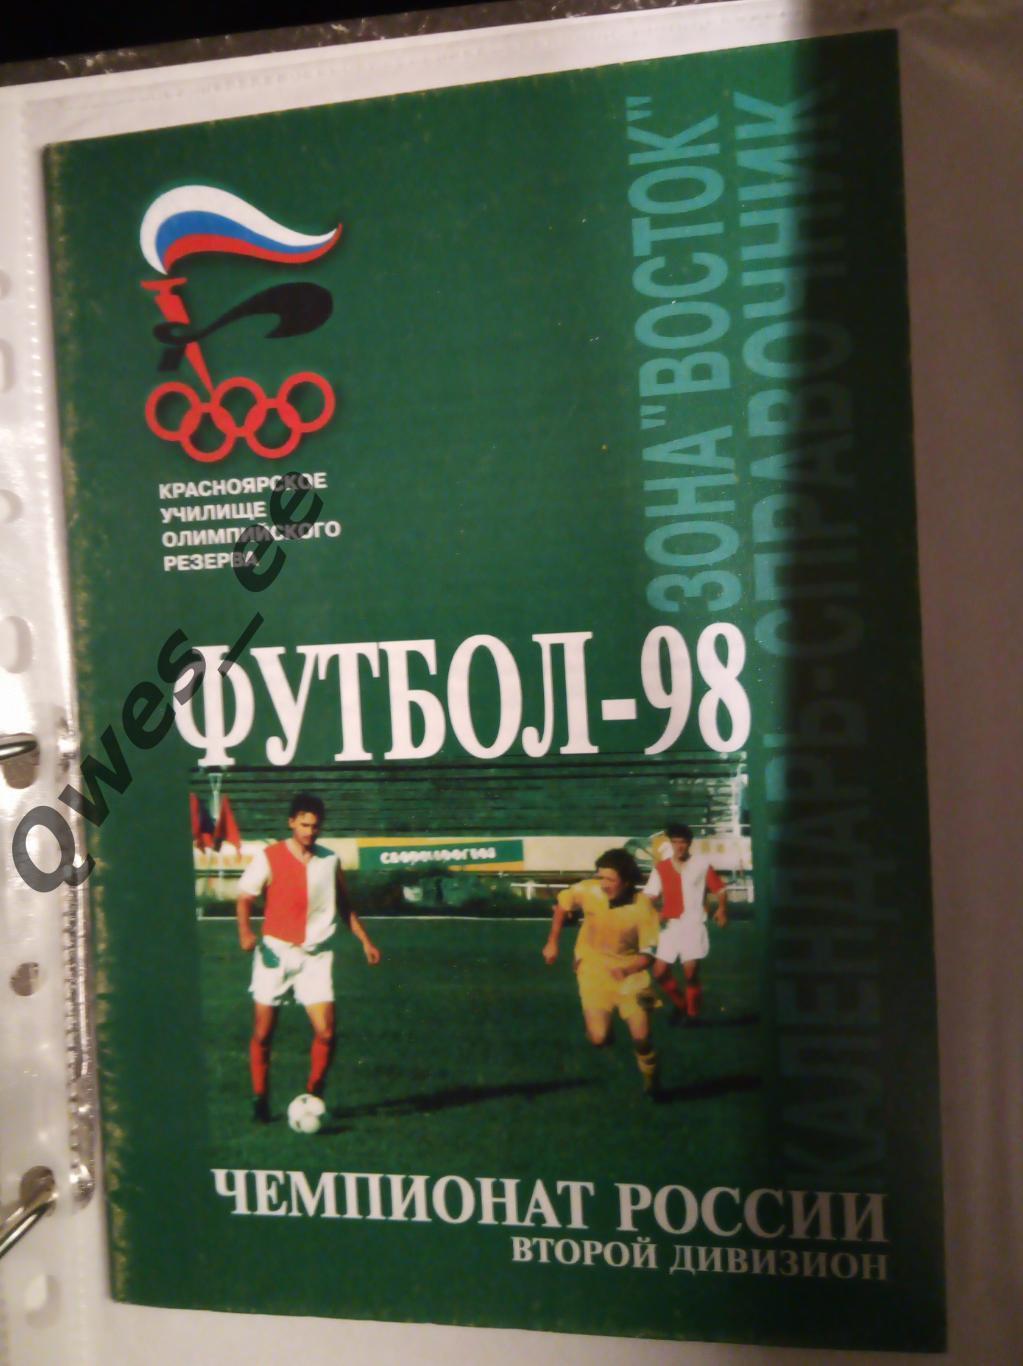 Календарь справочник 98 Второй дивизион Зона Восток Футбол 1998